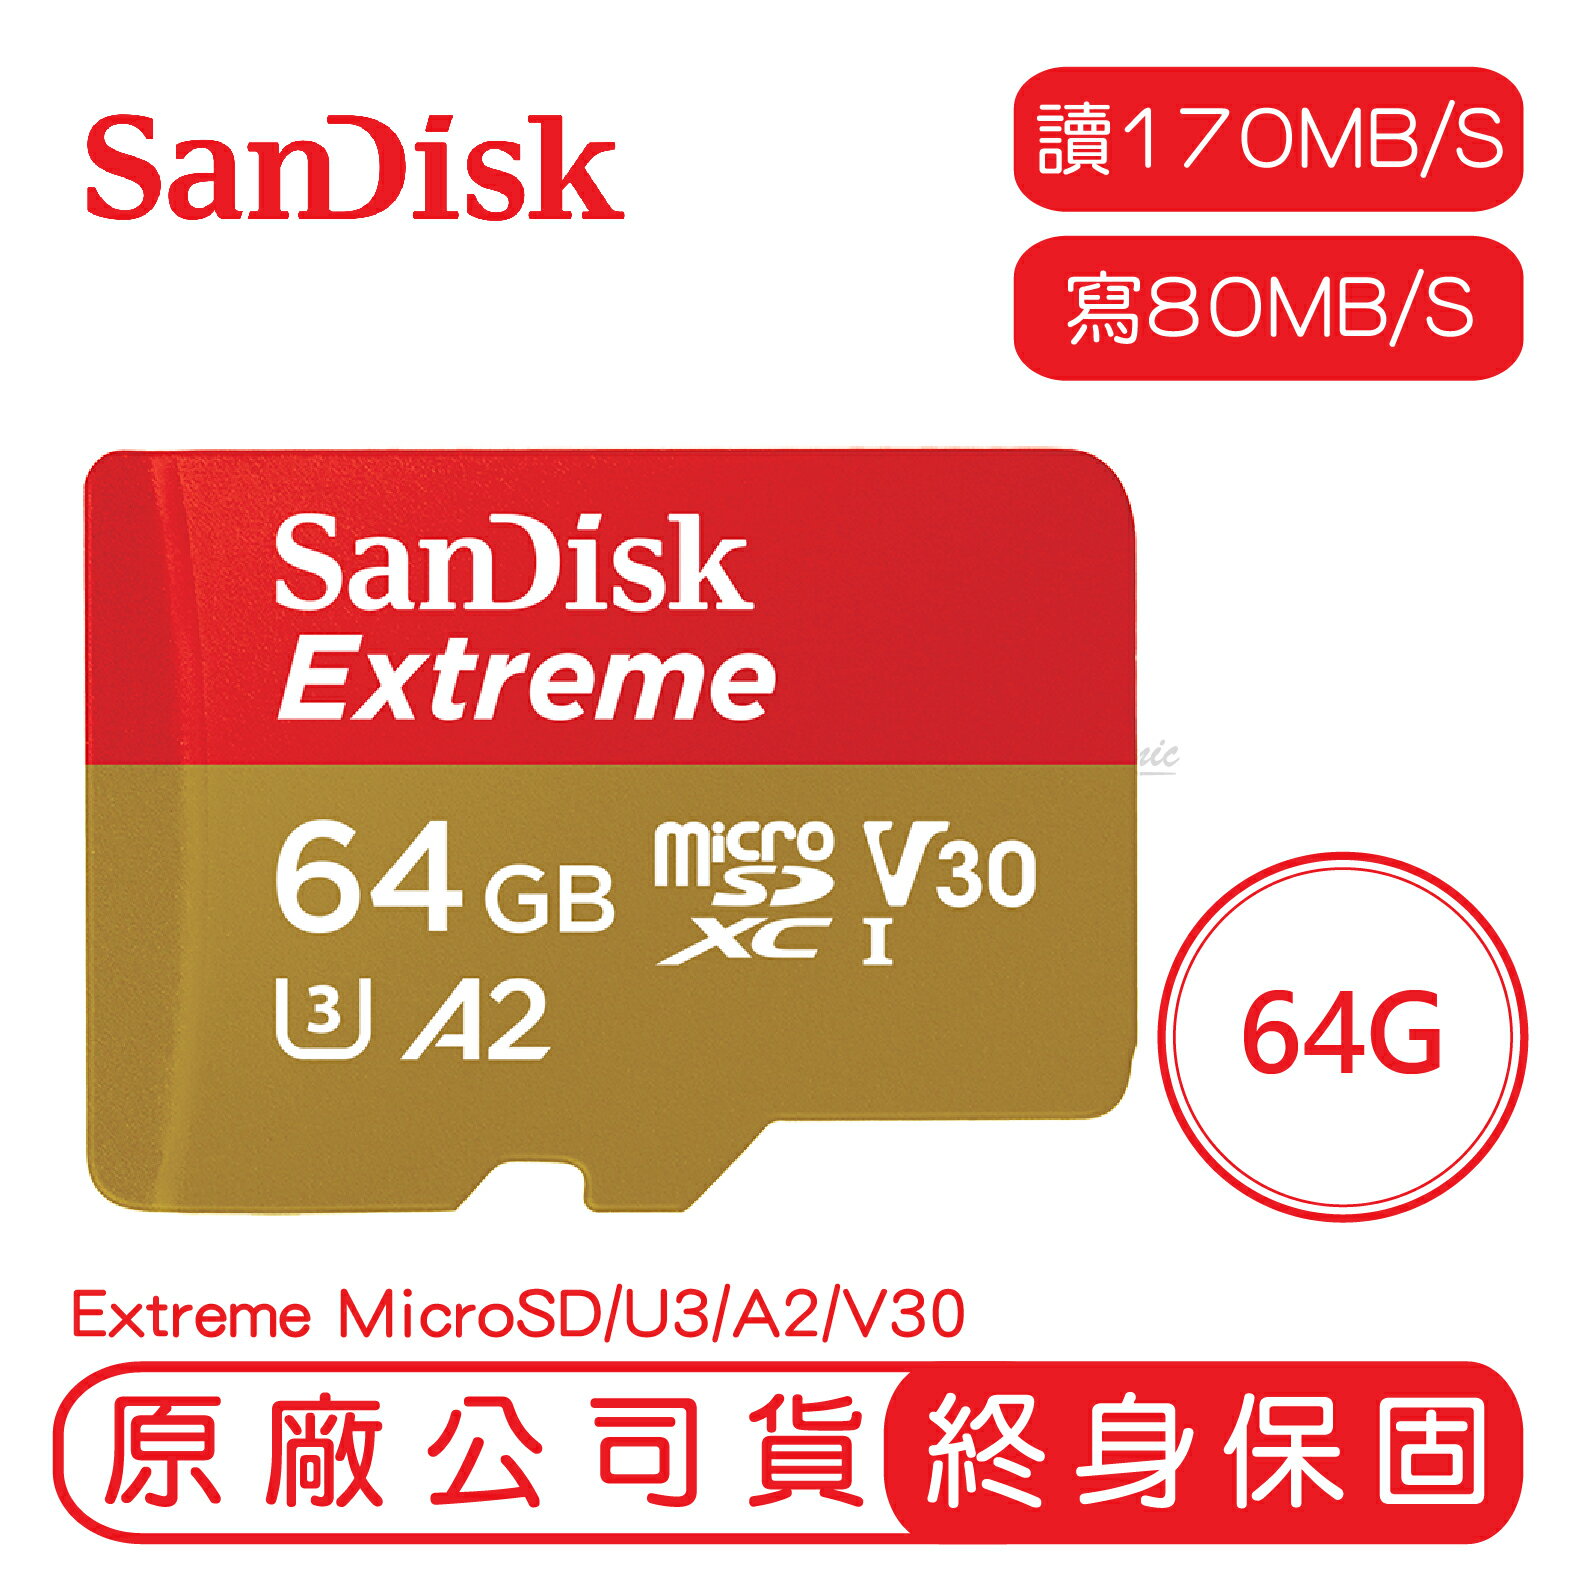 【9%點數】SANDISK 64G EXTREME microSD UHS-I A2 V30 記憶卡 64GB 讀170 寫80【APP下單9%點數回饋】【限定樂天APP下單】